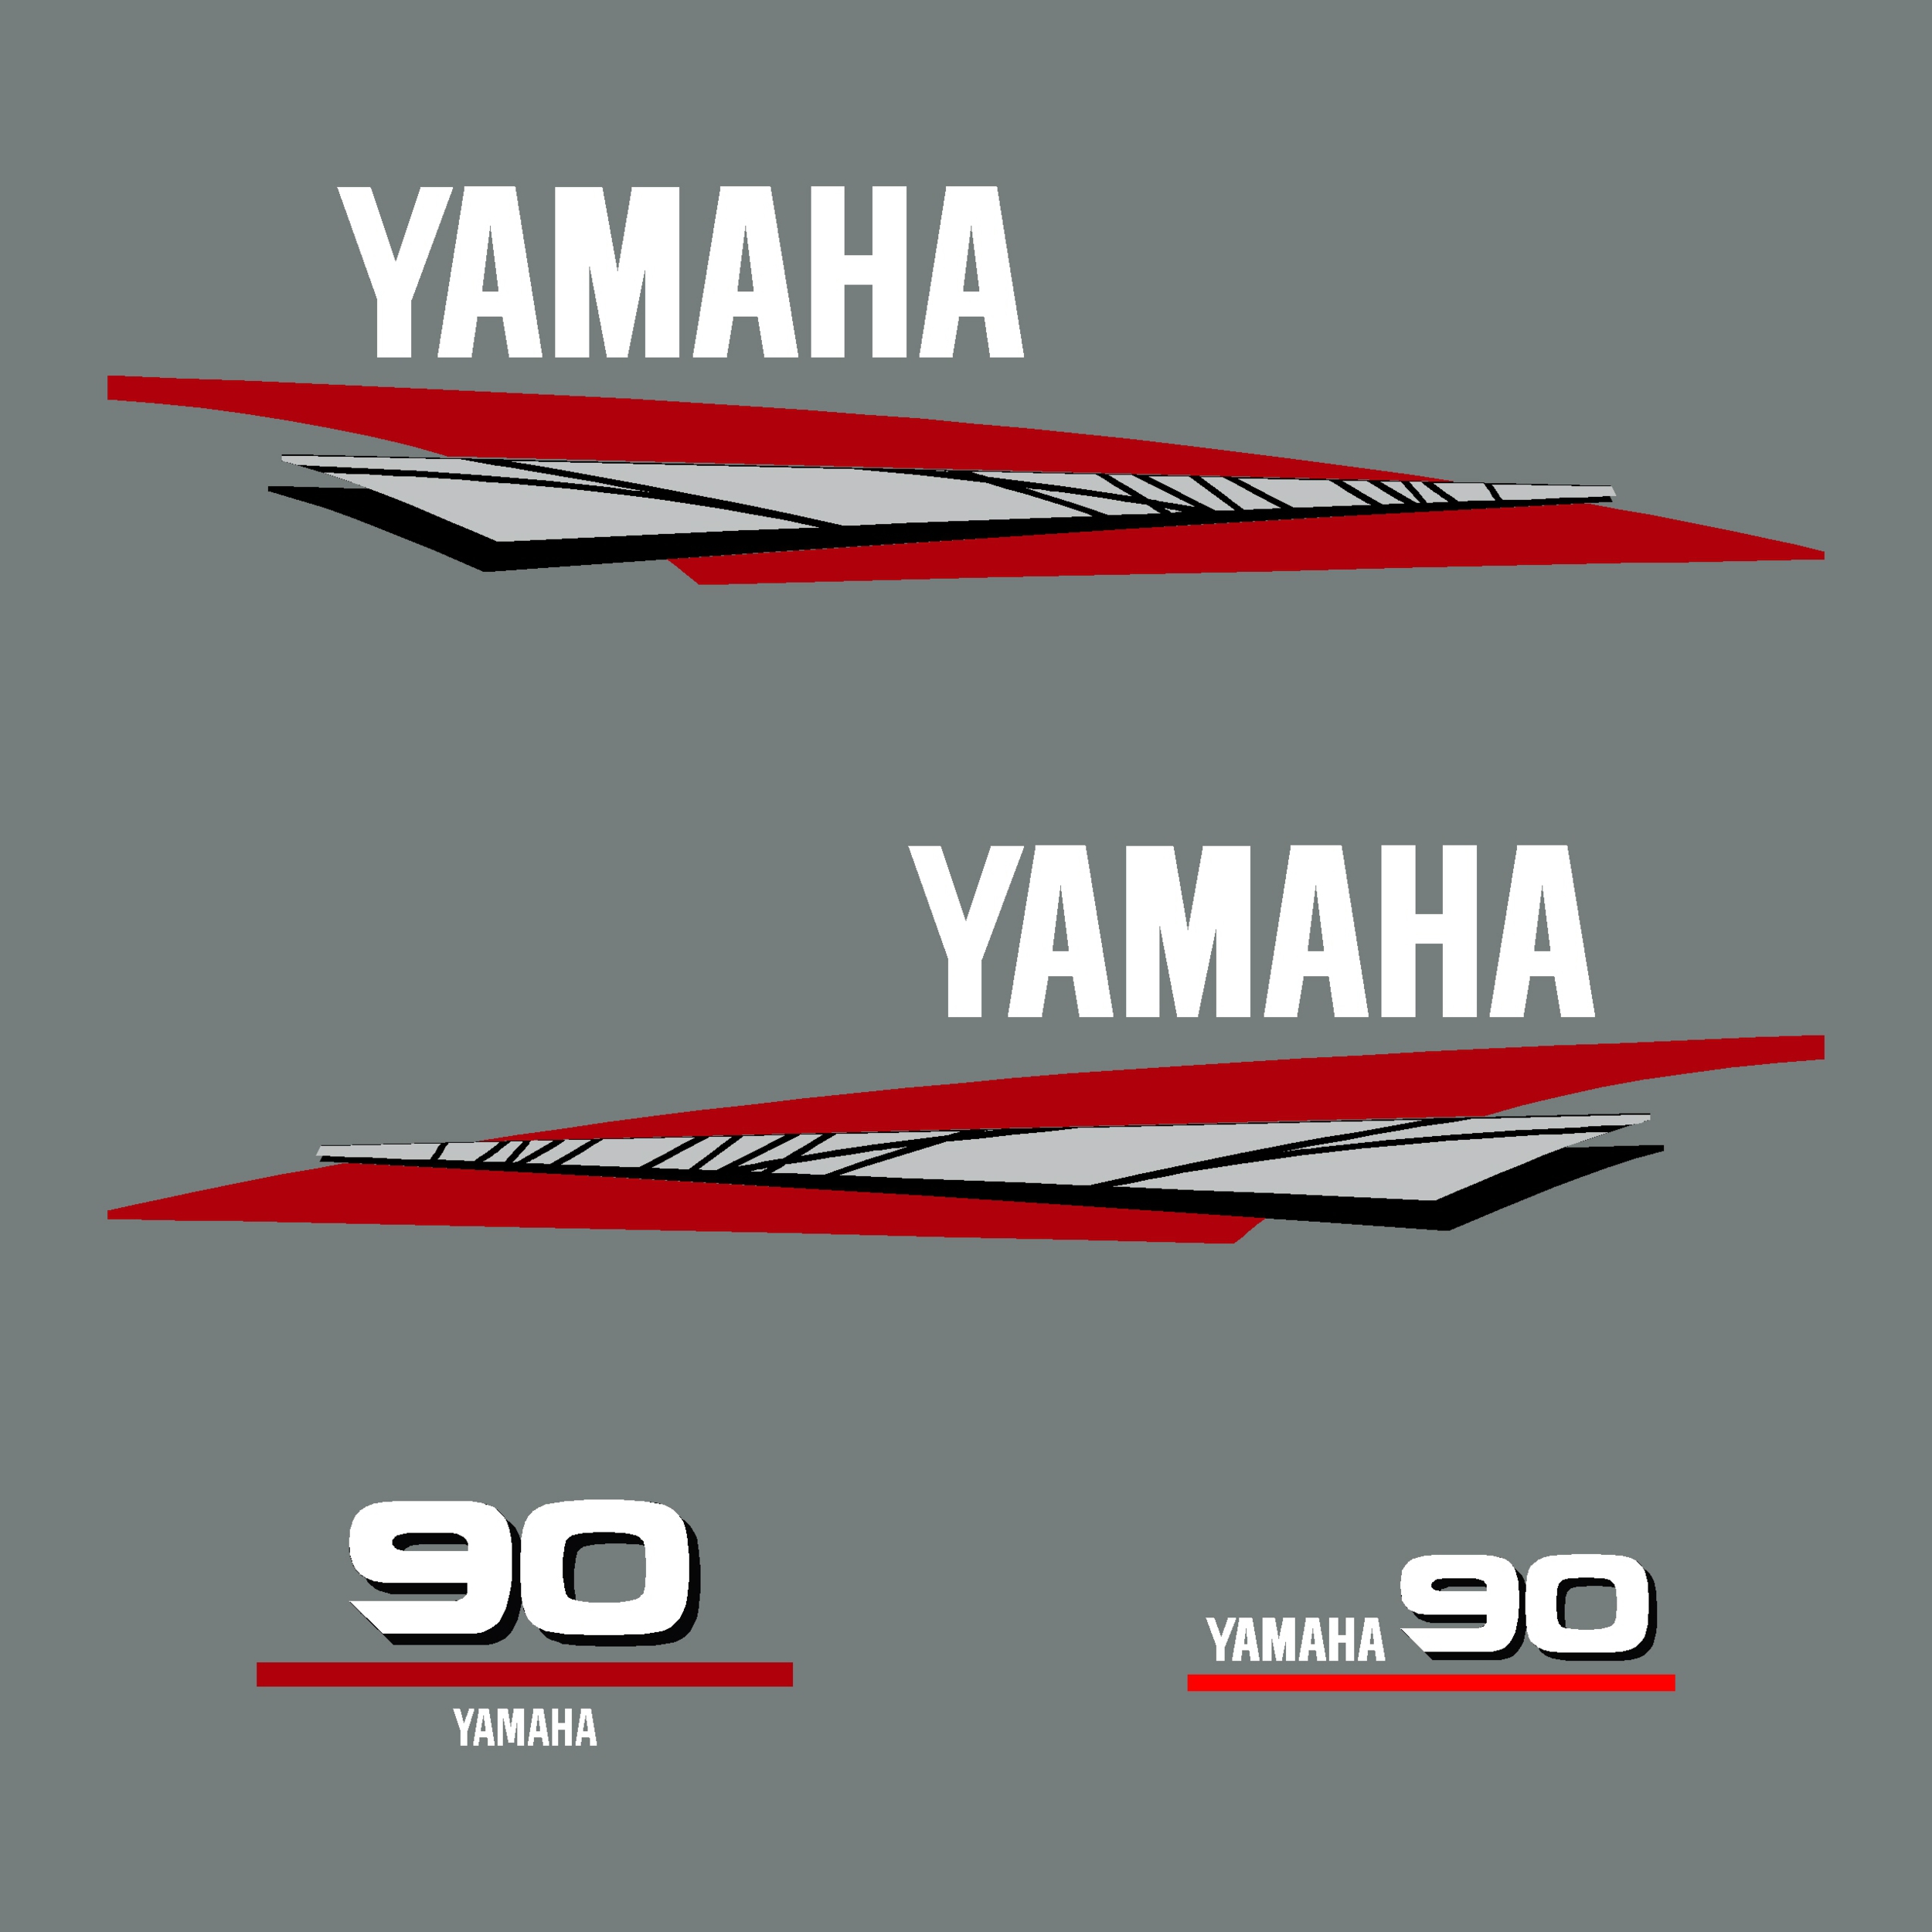 Kit stickers YAMAHA 90 cv serie 6 - MOTEUR HORSBORD/YAMAHA